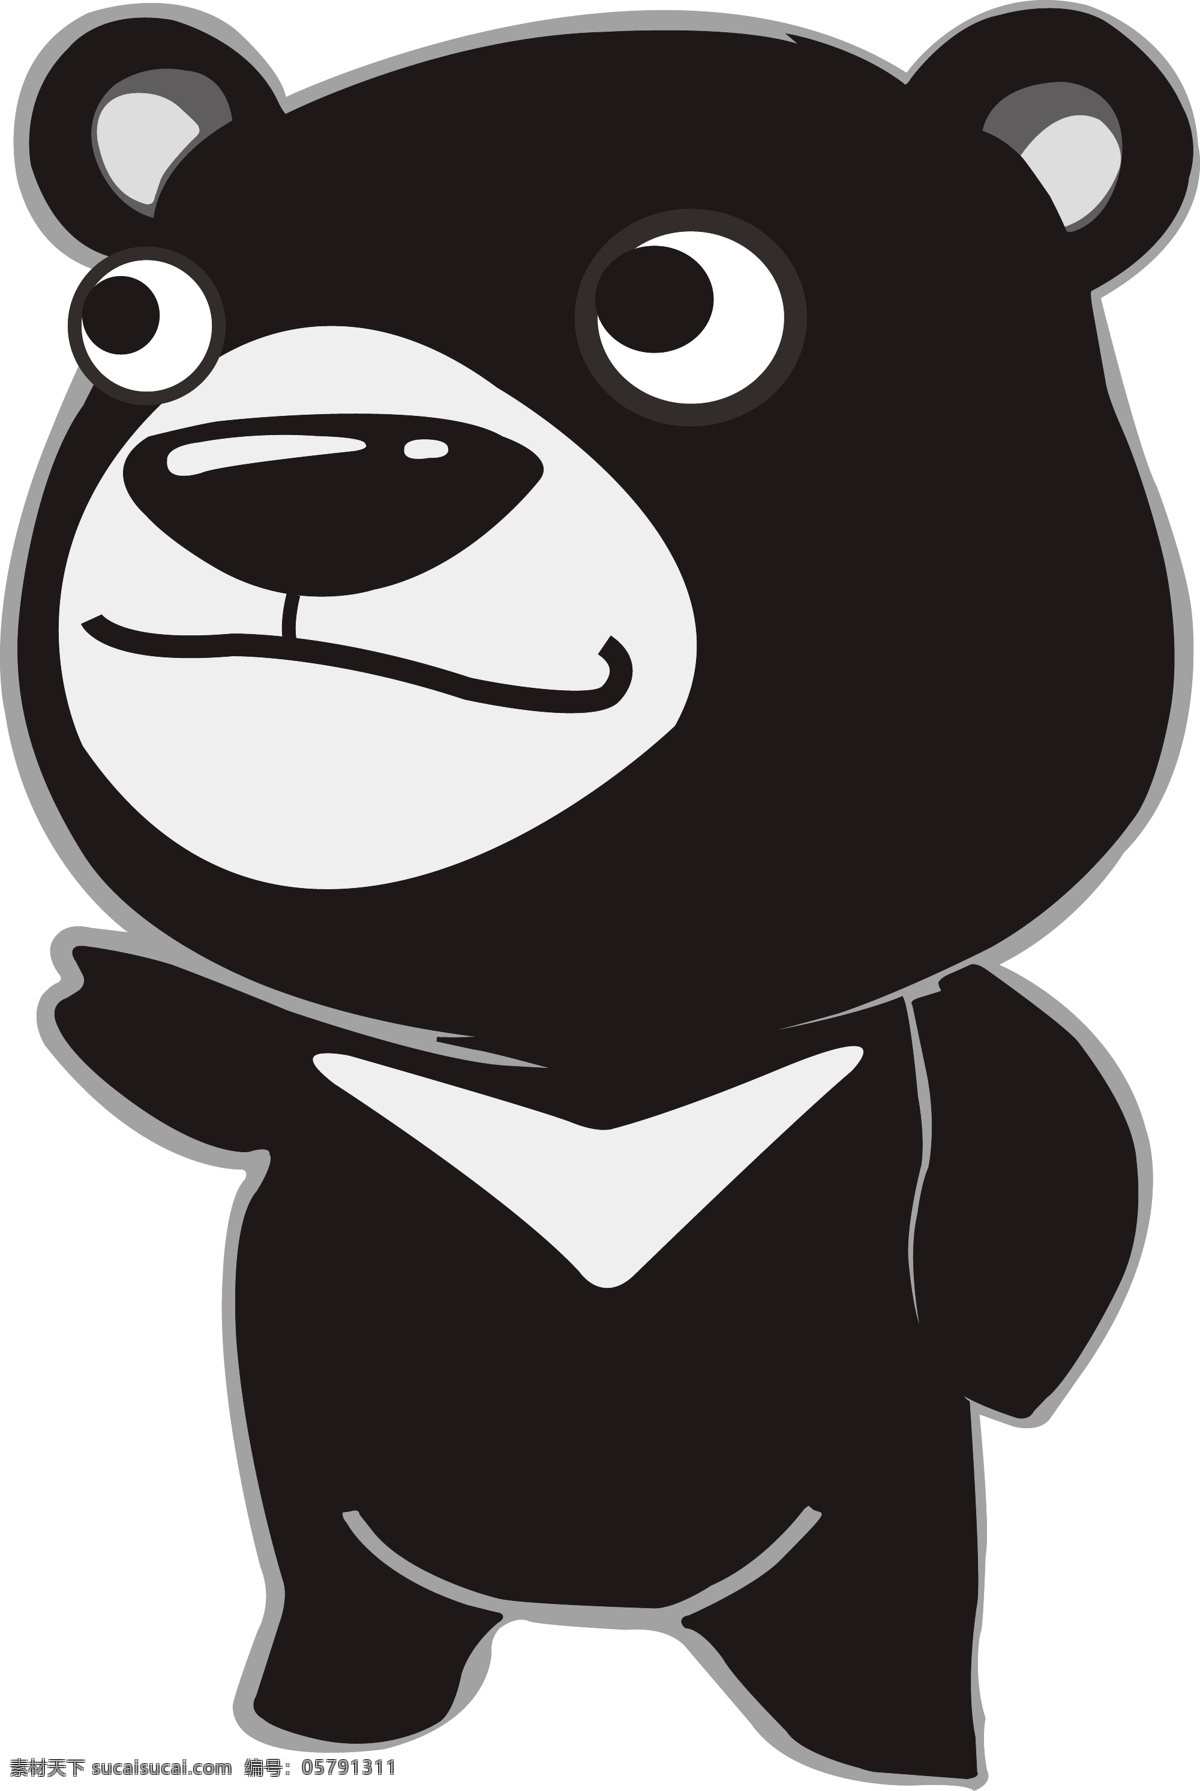 黑熊 熊 動物 黑色 卡通 可愛 矢量 野生动物 生物世界